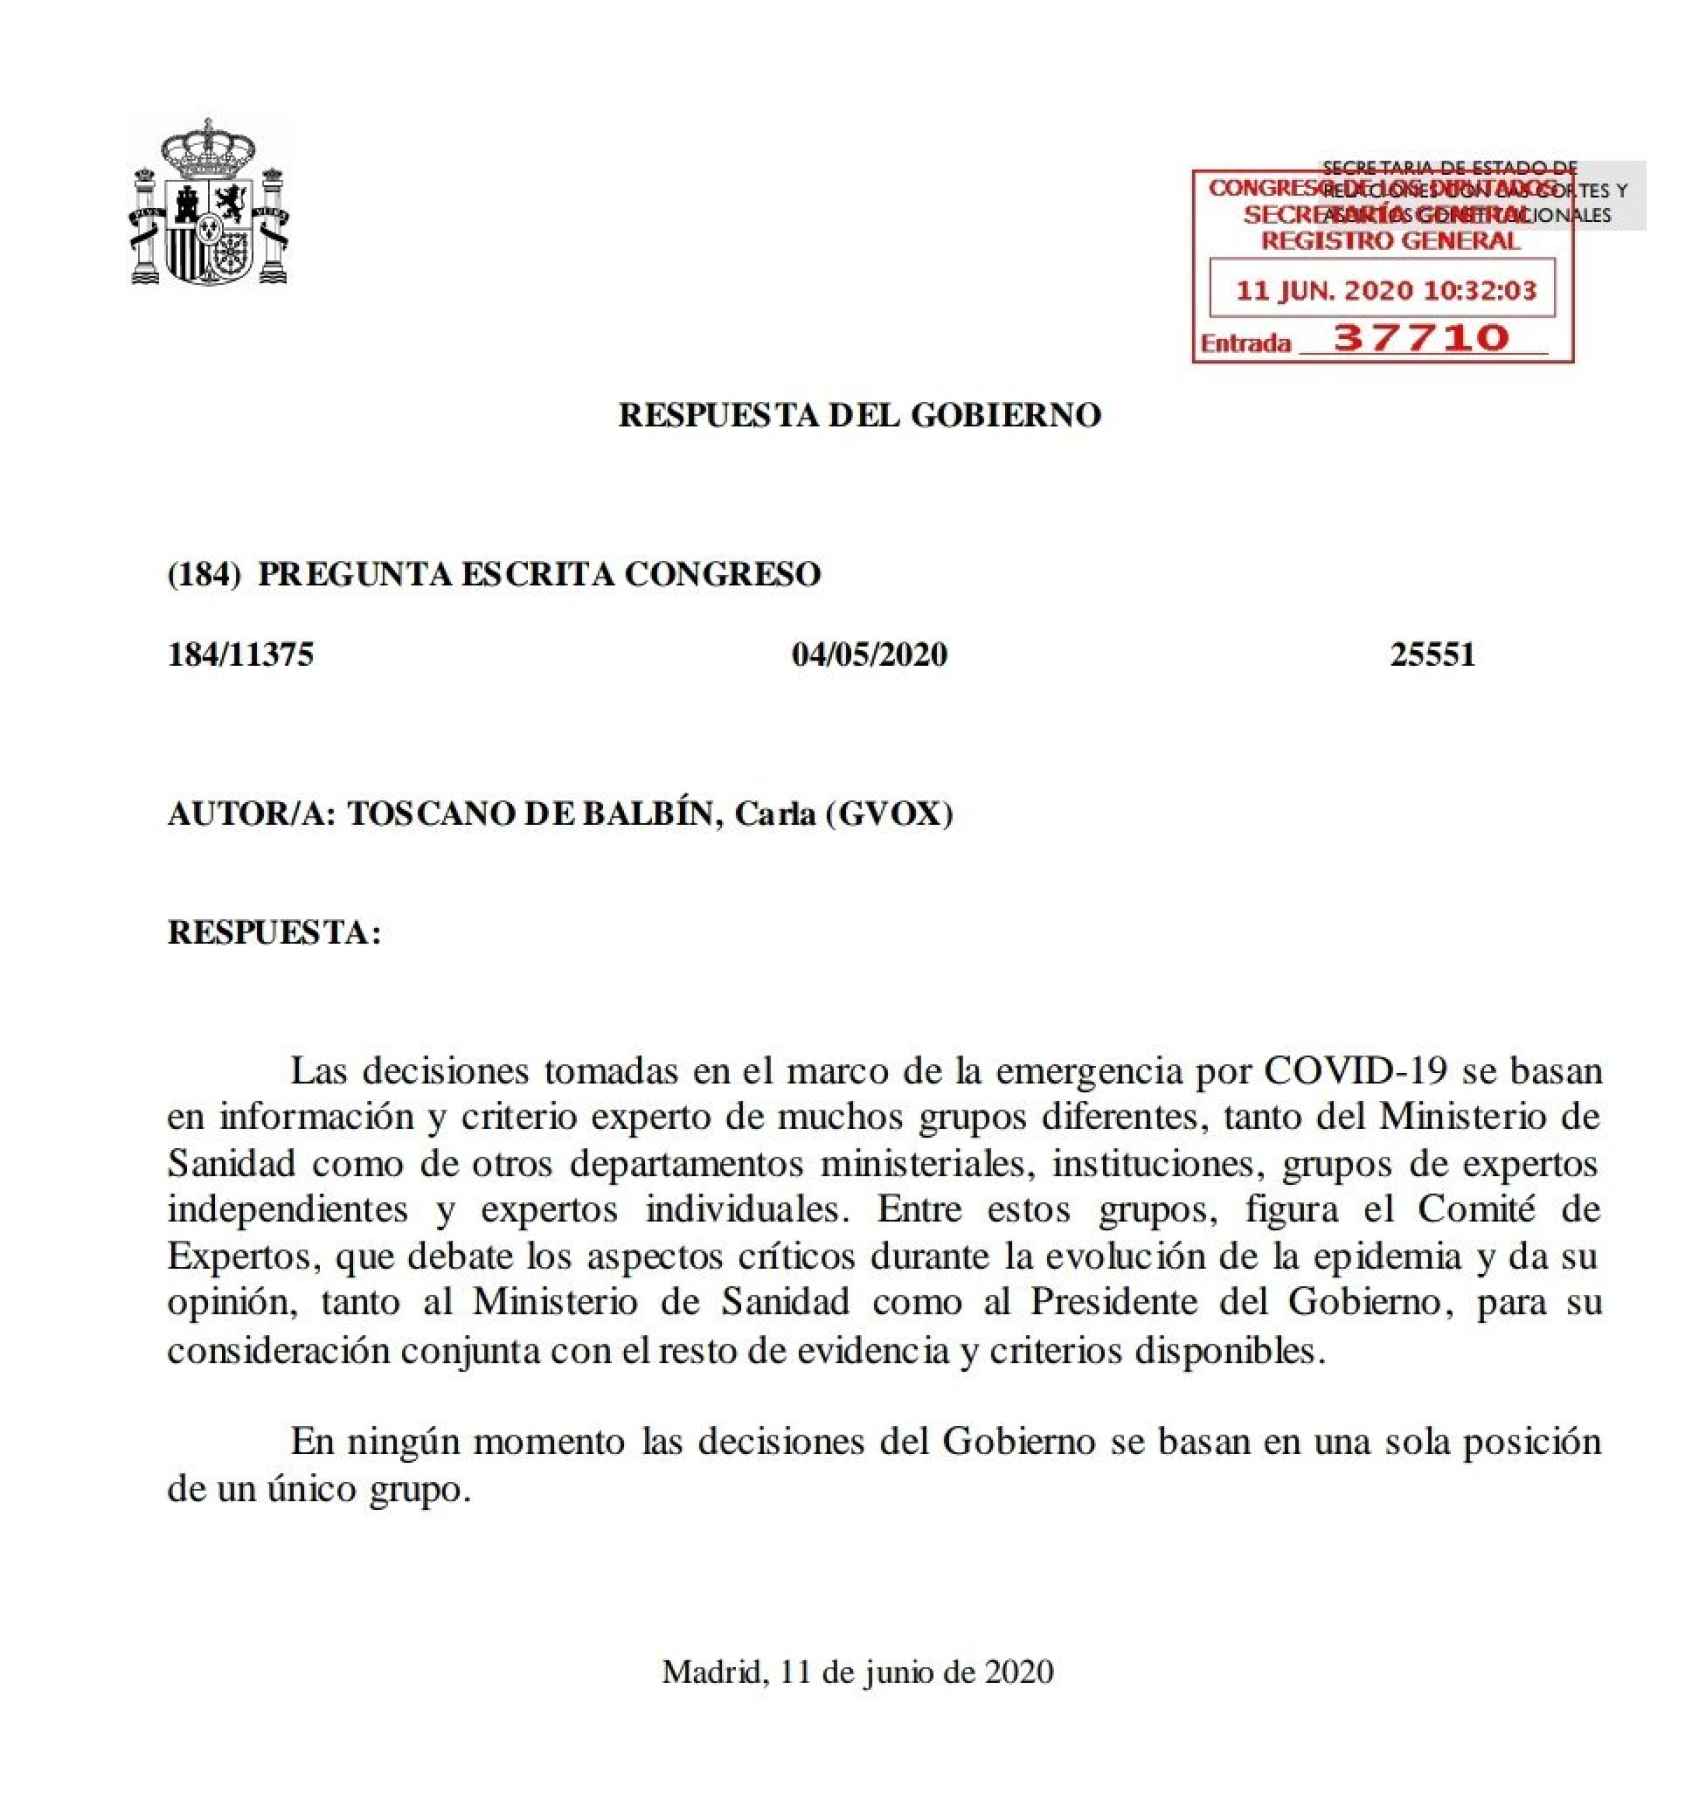 Respuesta de la Secretaría de Estado de Relaciones con las Cortes a Carla Toscano (Vox).